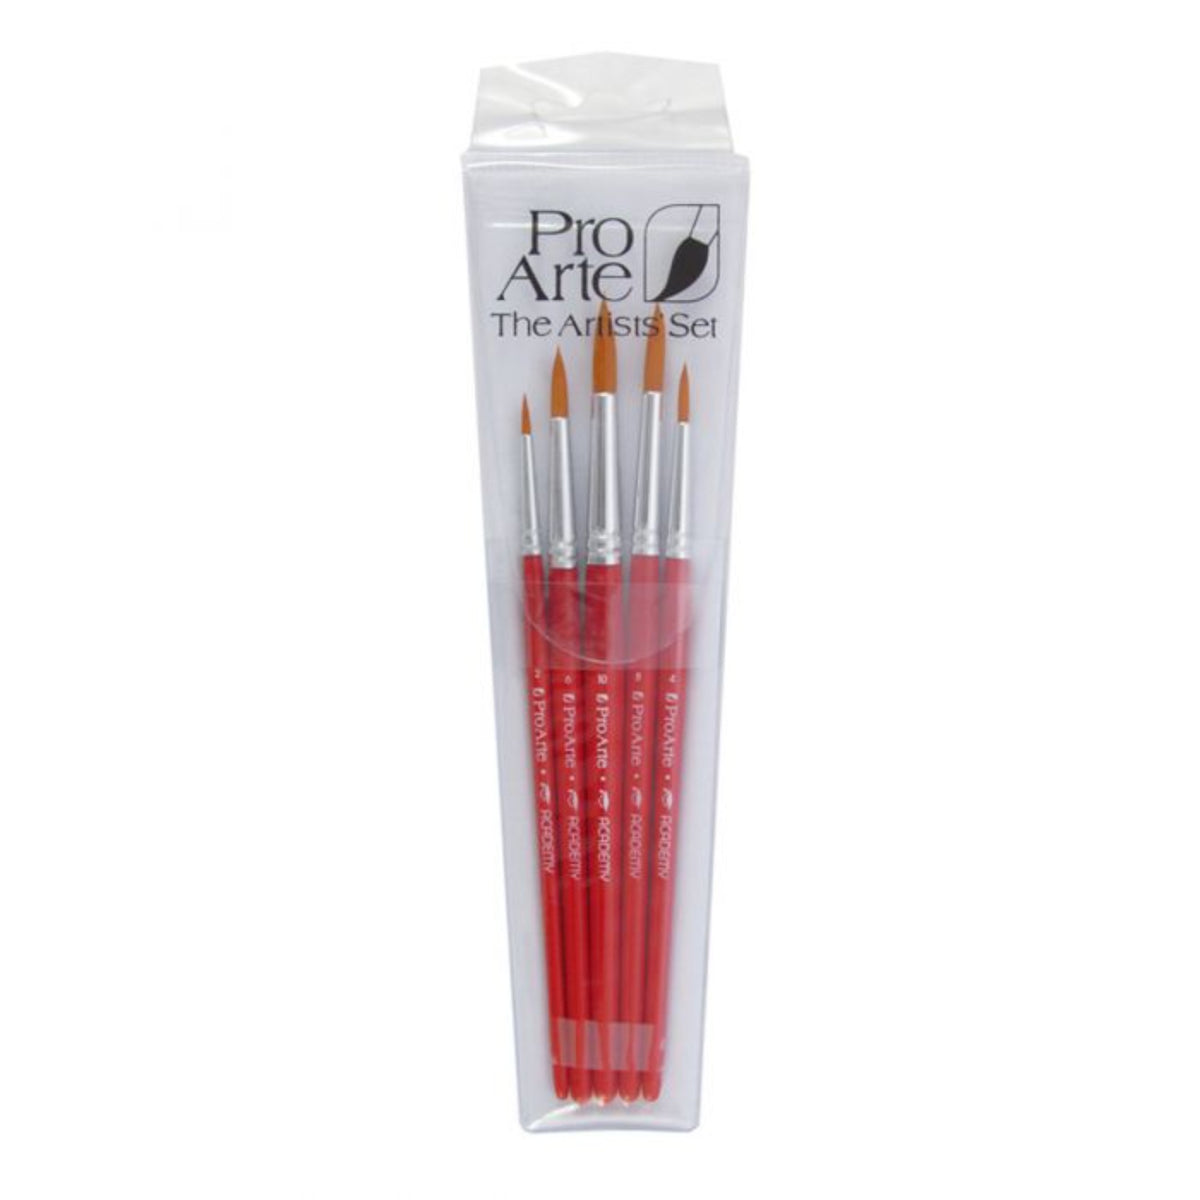 Pro Arte Academy Set of 5 Brushes